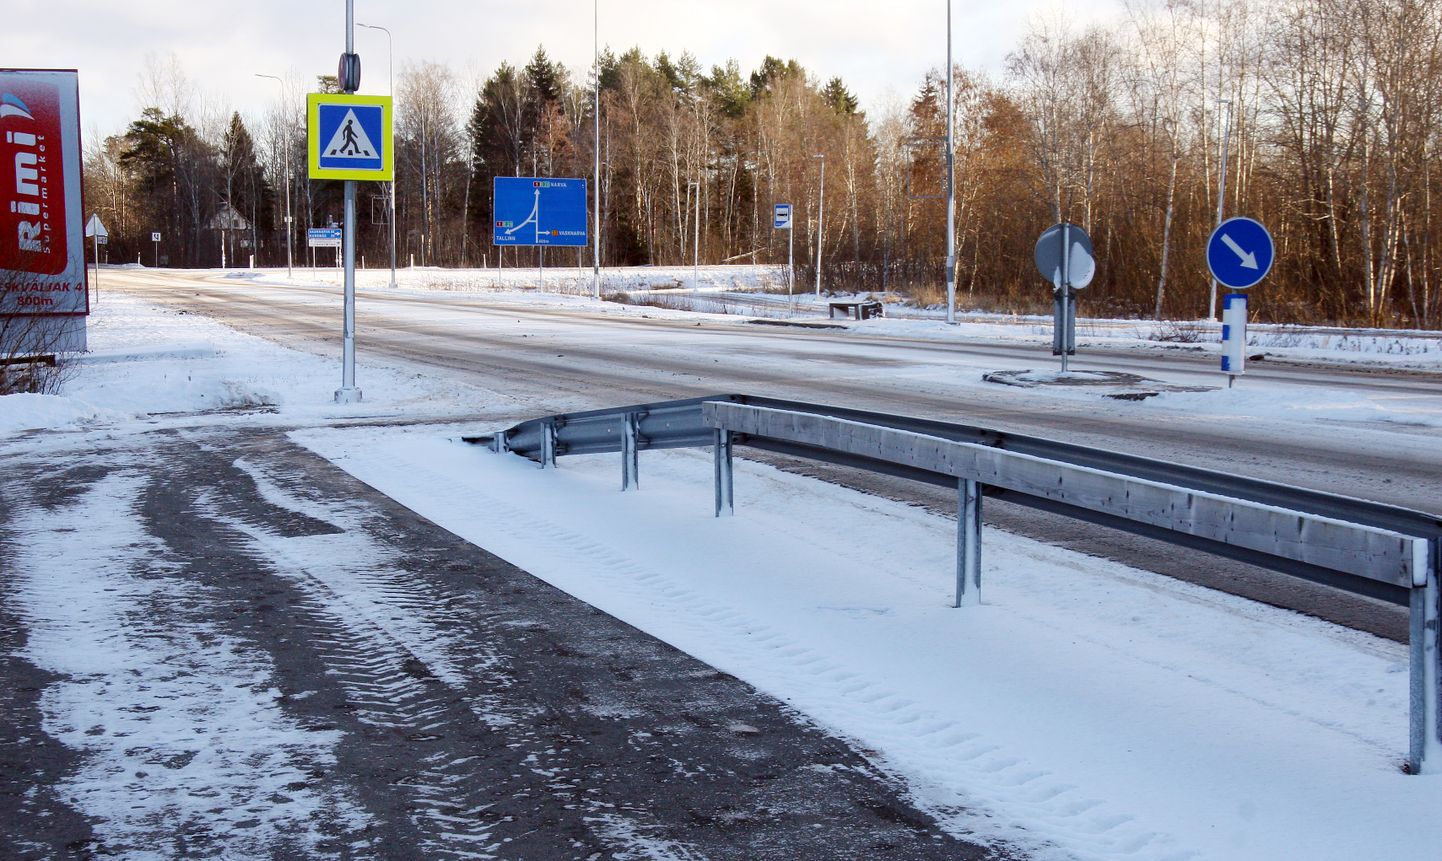 Jõhvis saab kavandatav kergliiklustee kokku Narva maantee olemasoleva kergliiklusteega, mis on praeguseks valmis ehitatud kesklinna poolt tulles kuni Jõhvi-Vasknarva maantee ristmikuni.